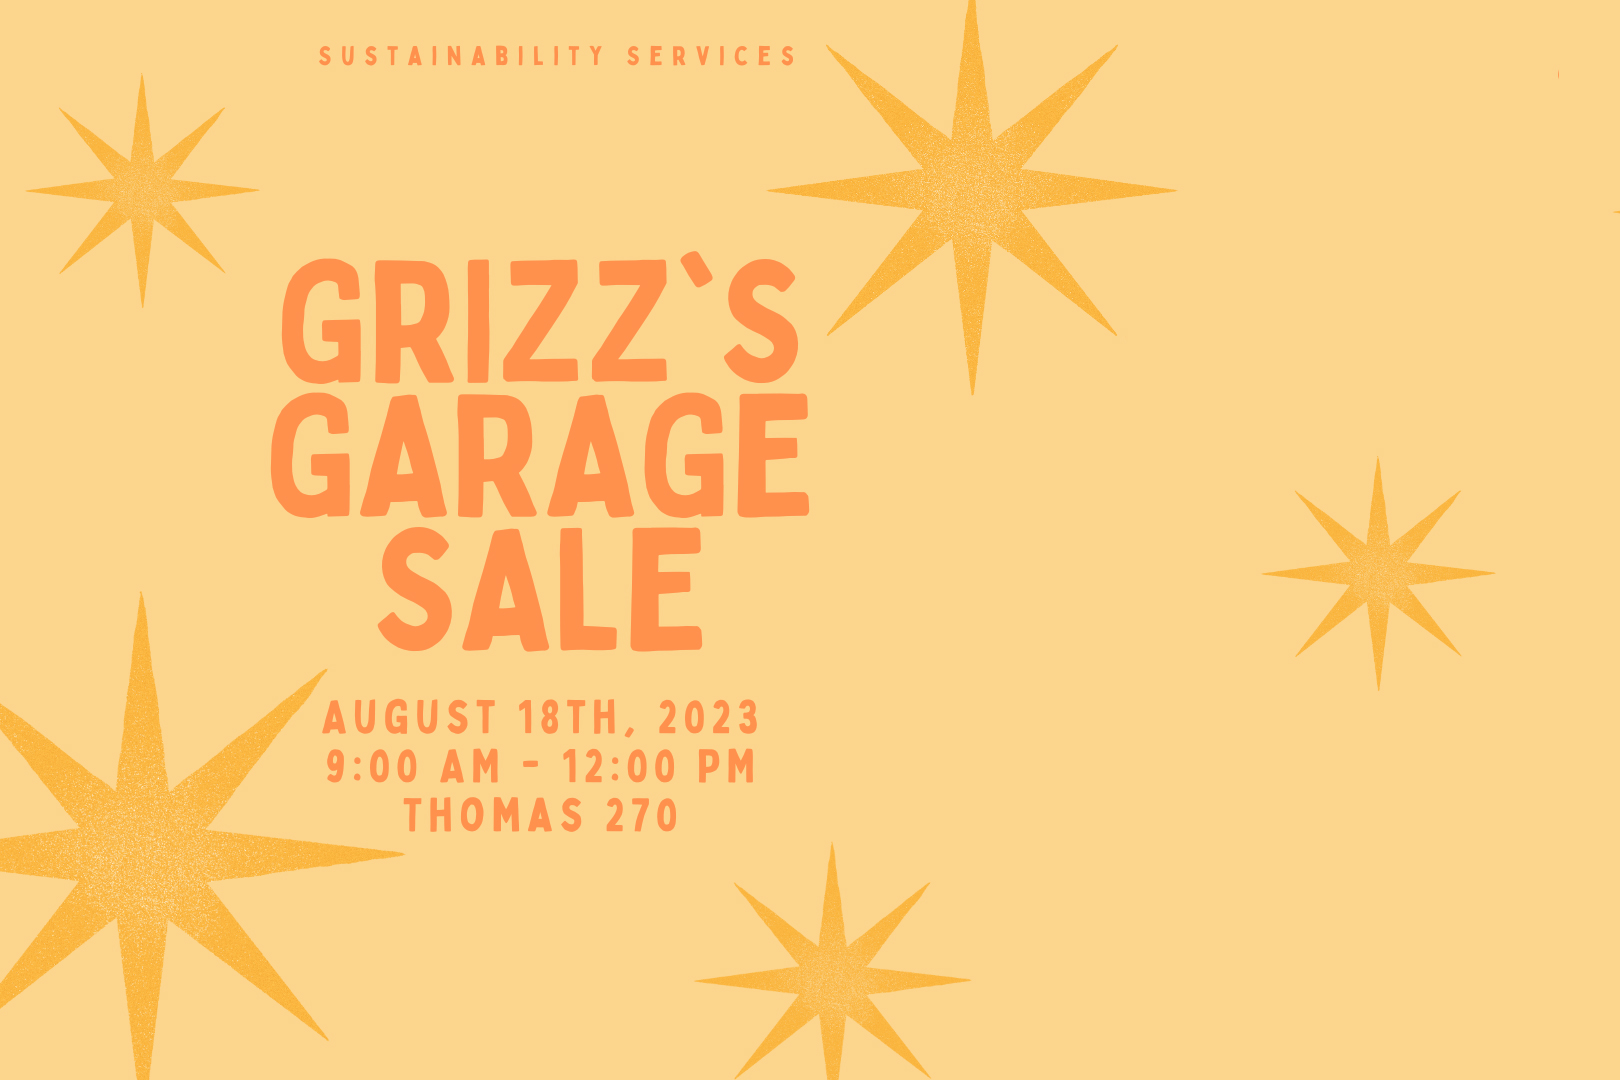 Grizz's Garage Sale